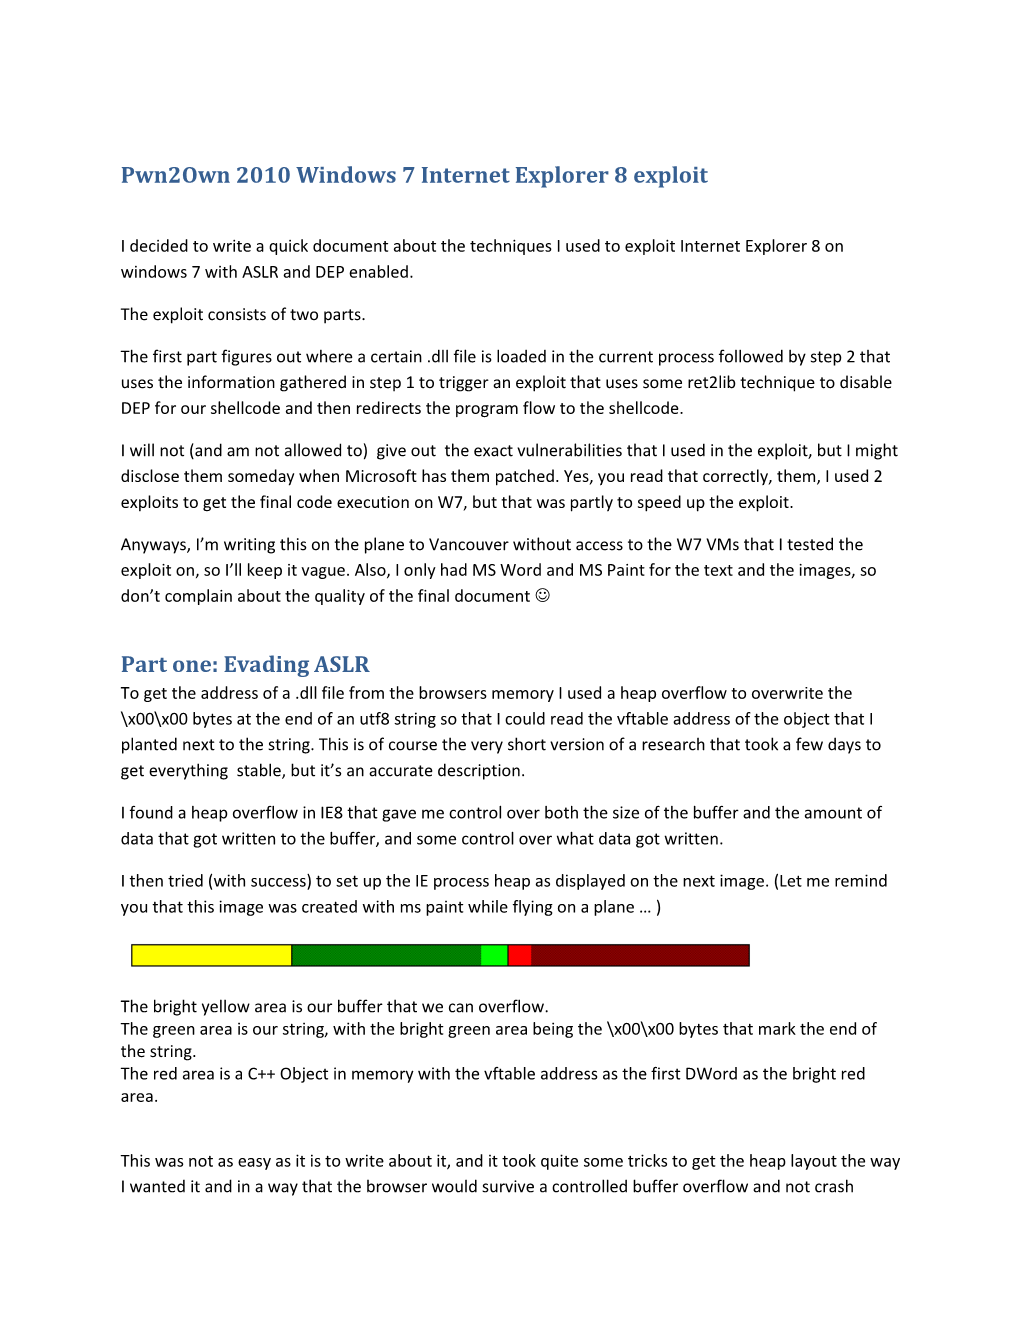 Pwn2own 2010 Windows 7 Internet Explorer 8 Exploit